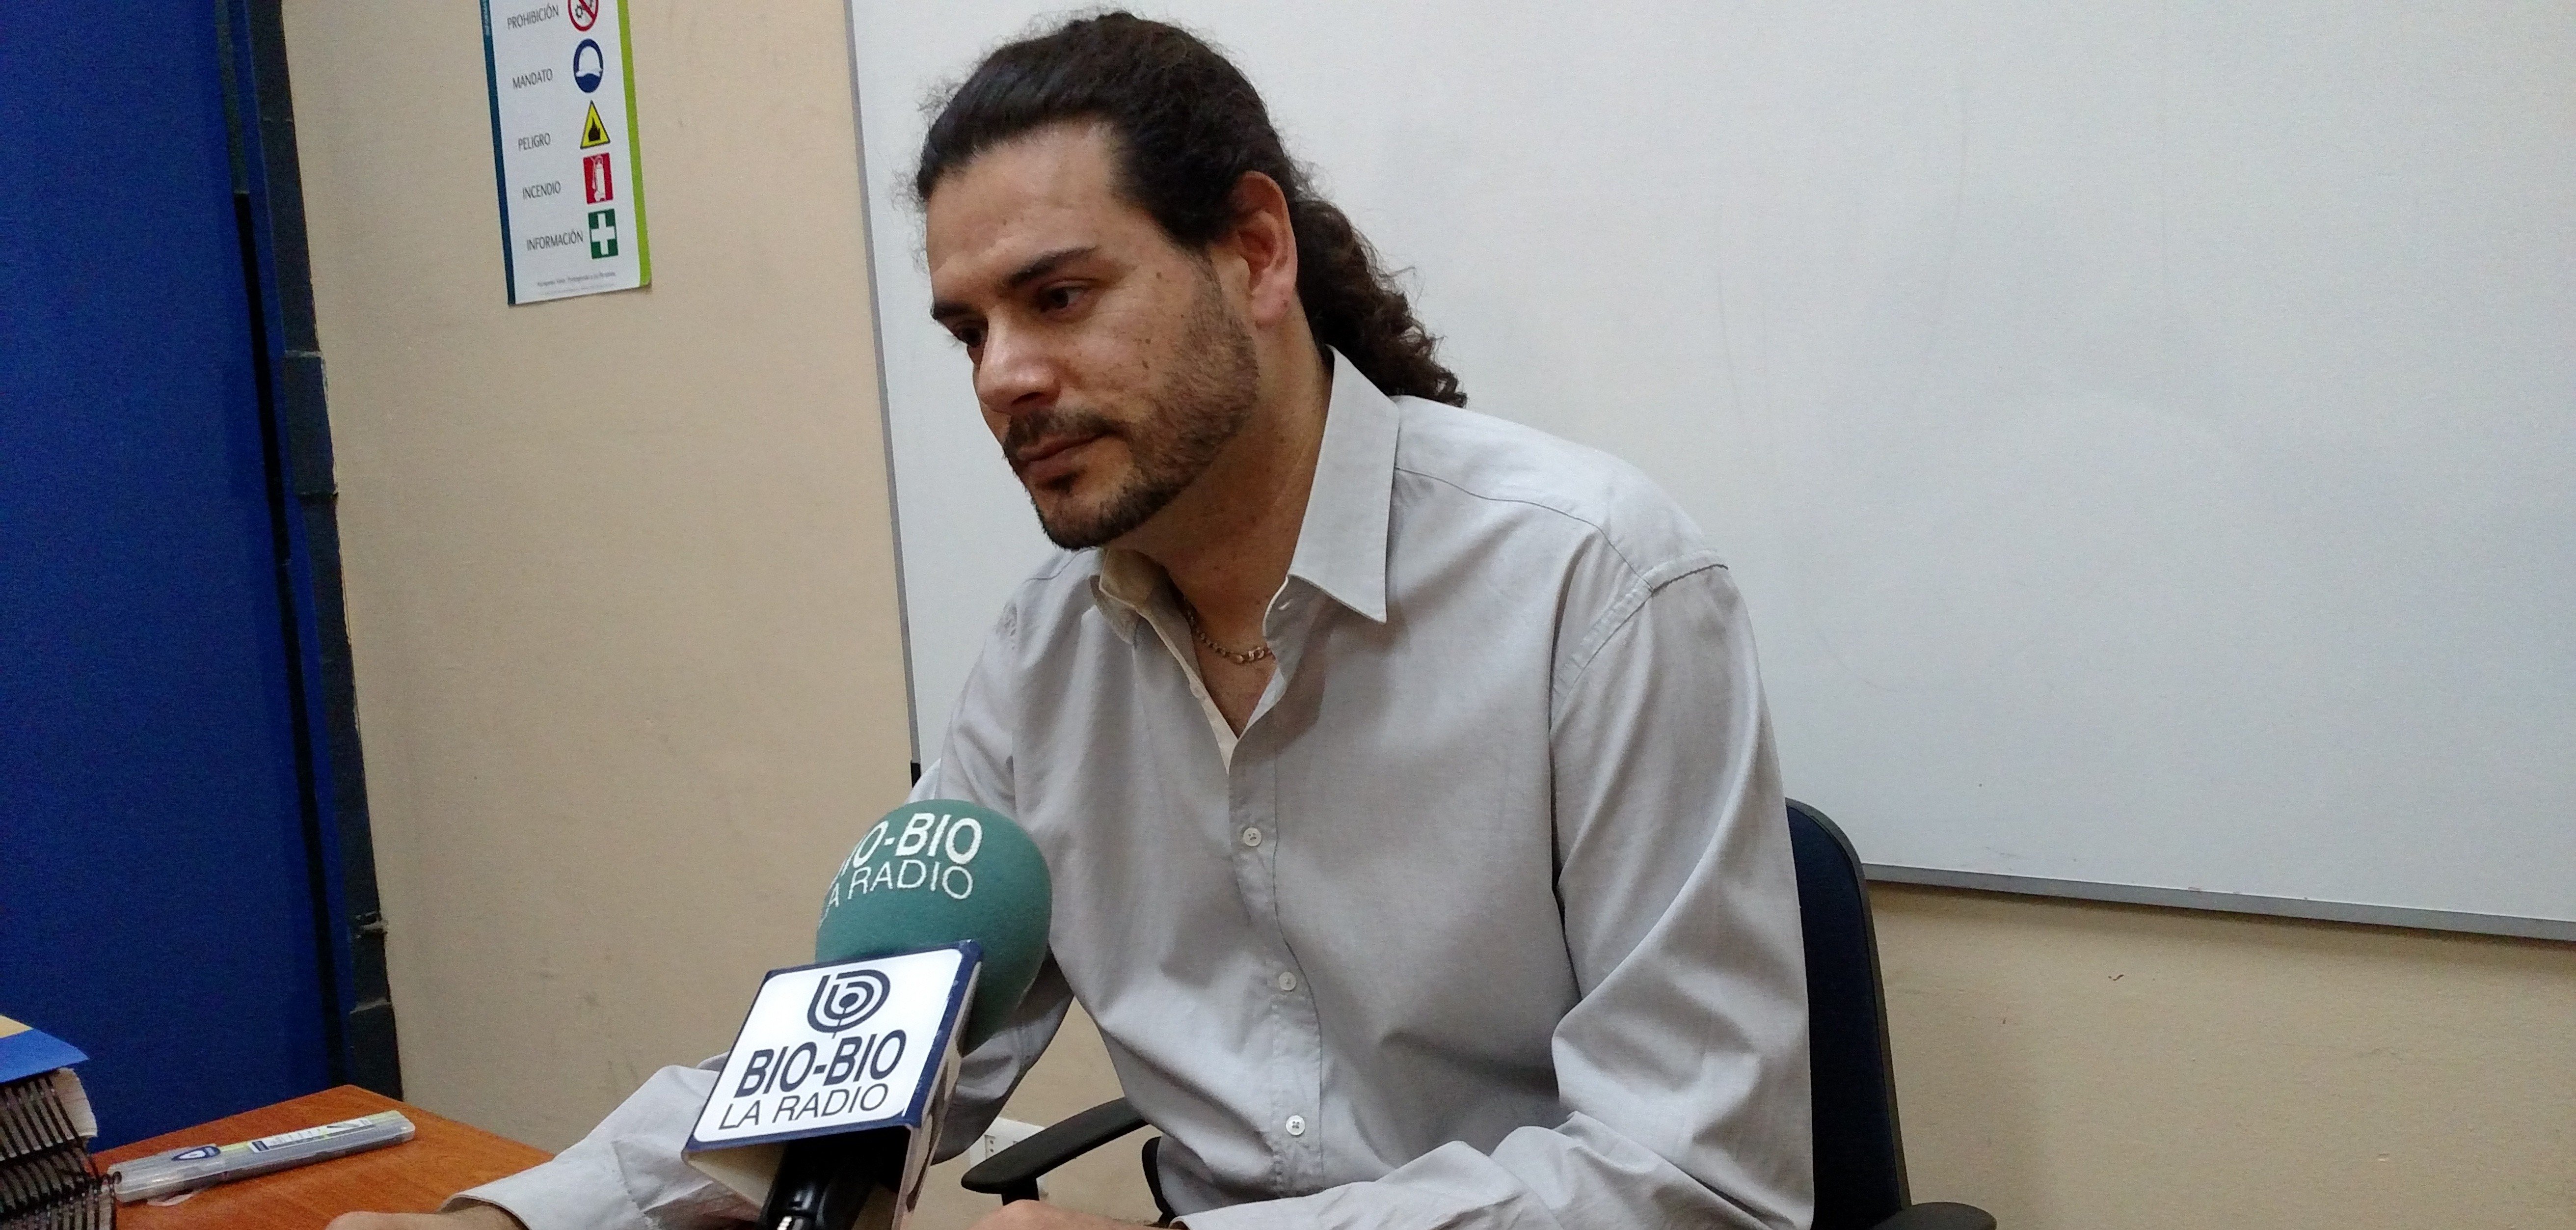 Mundo cultural, social y político se une en campaña por liberación de Jorge Mateluna